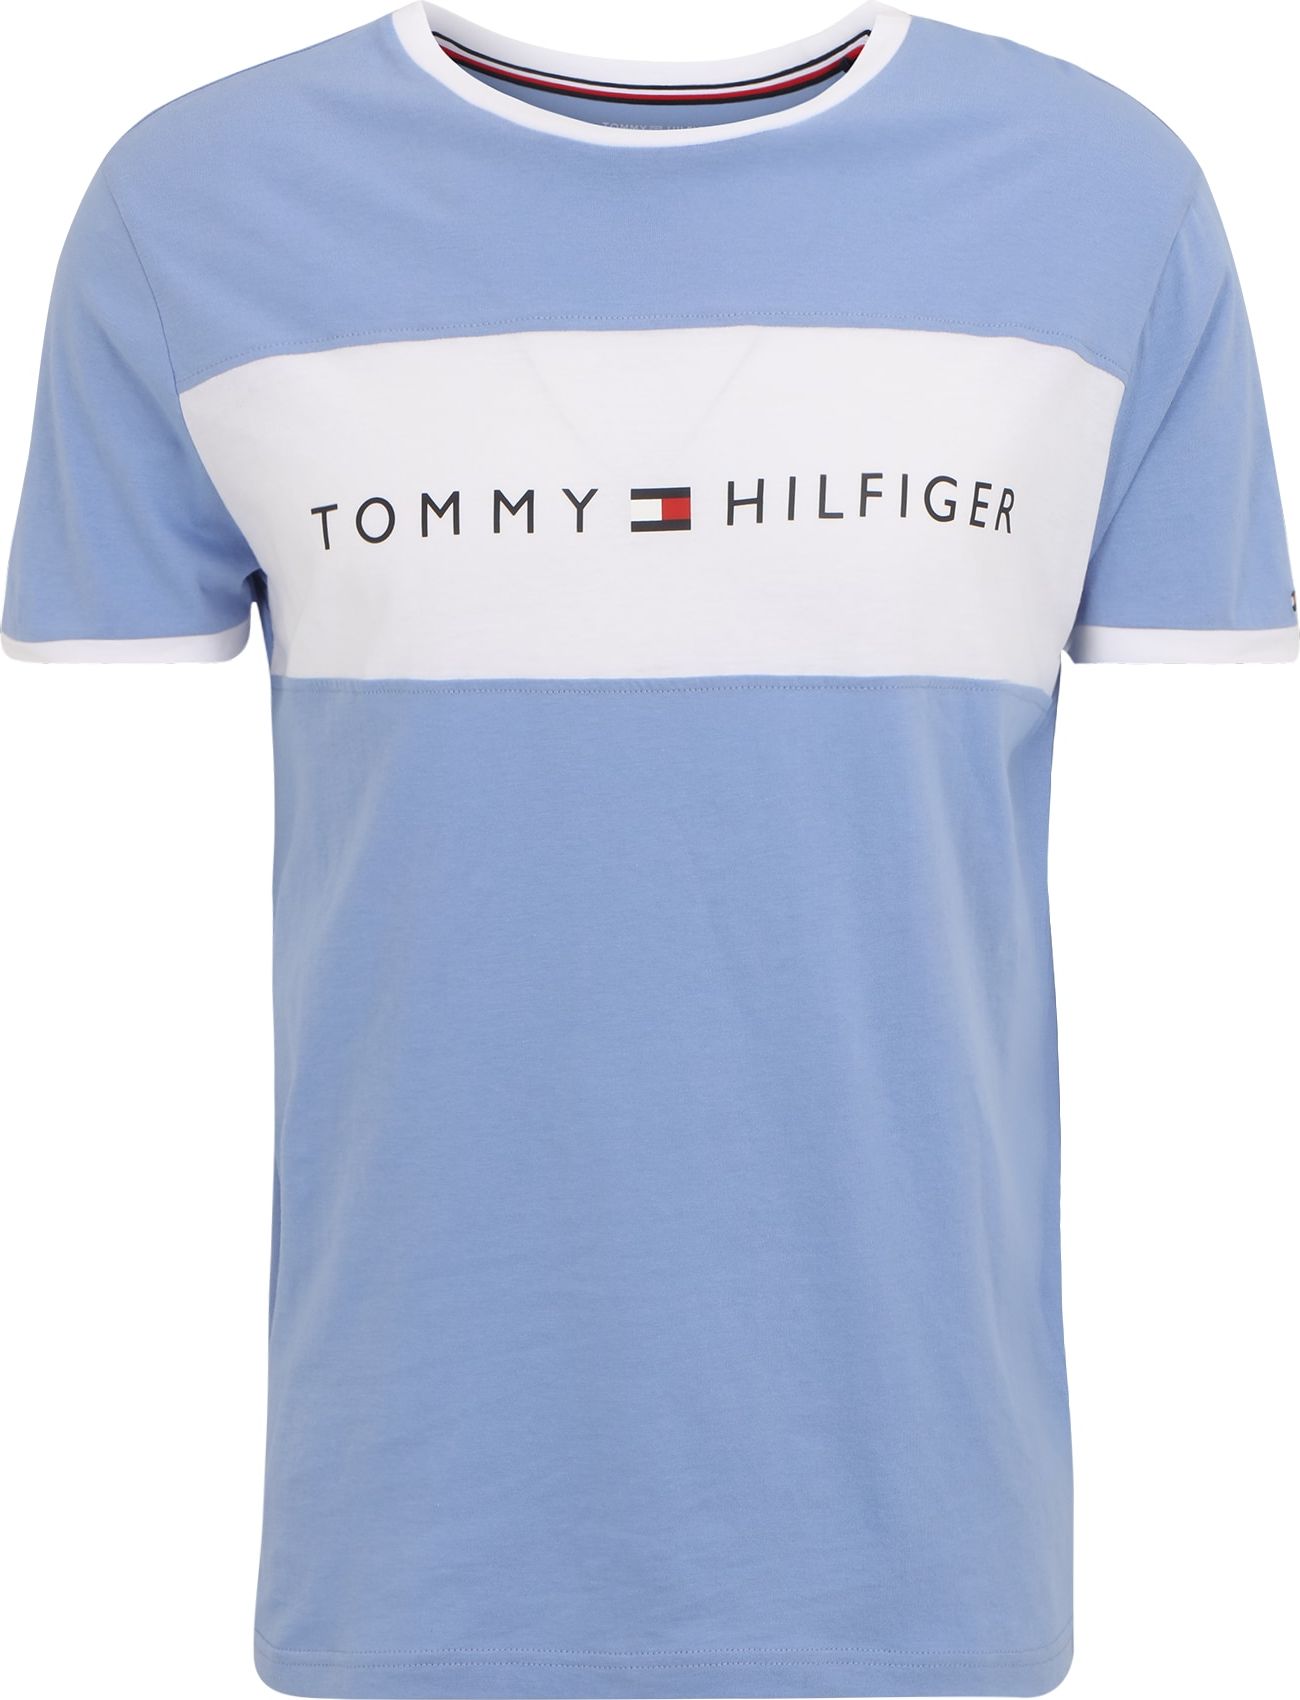 TOMMY HILFIGER Tílko světlemodrá / bílá / námořnická modř / červená